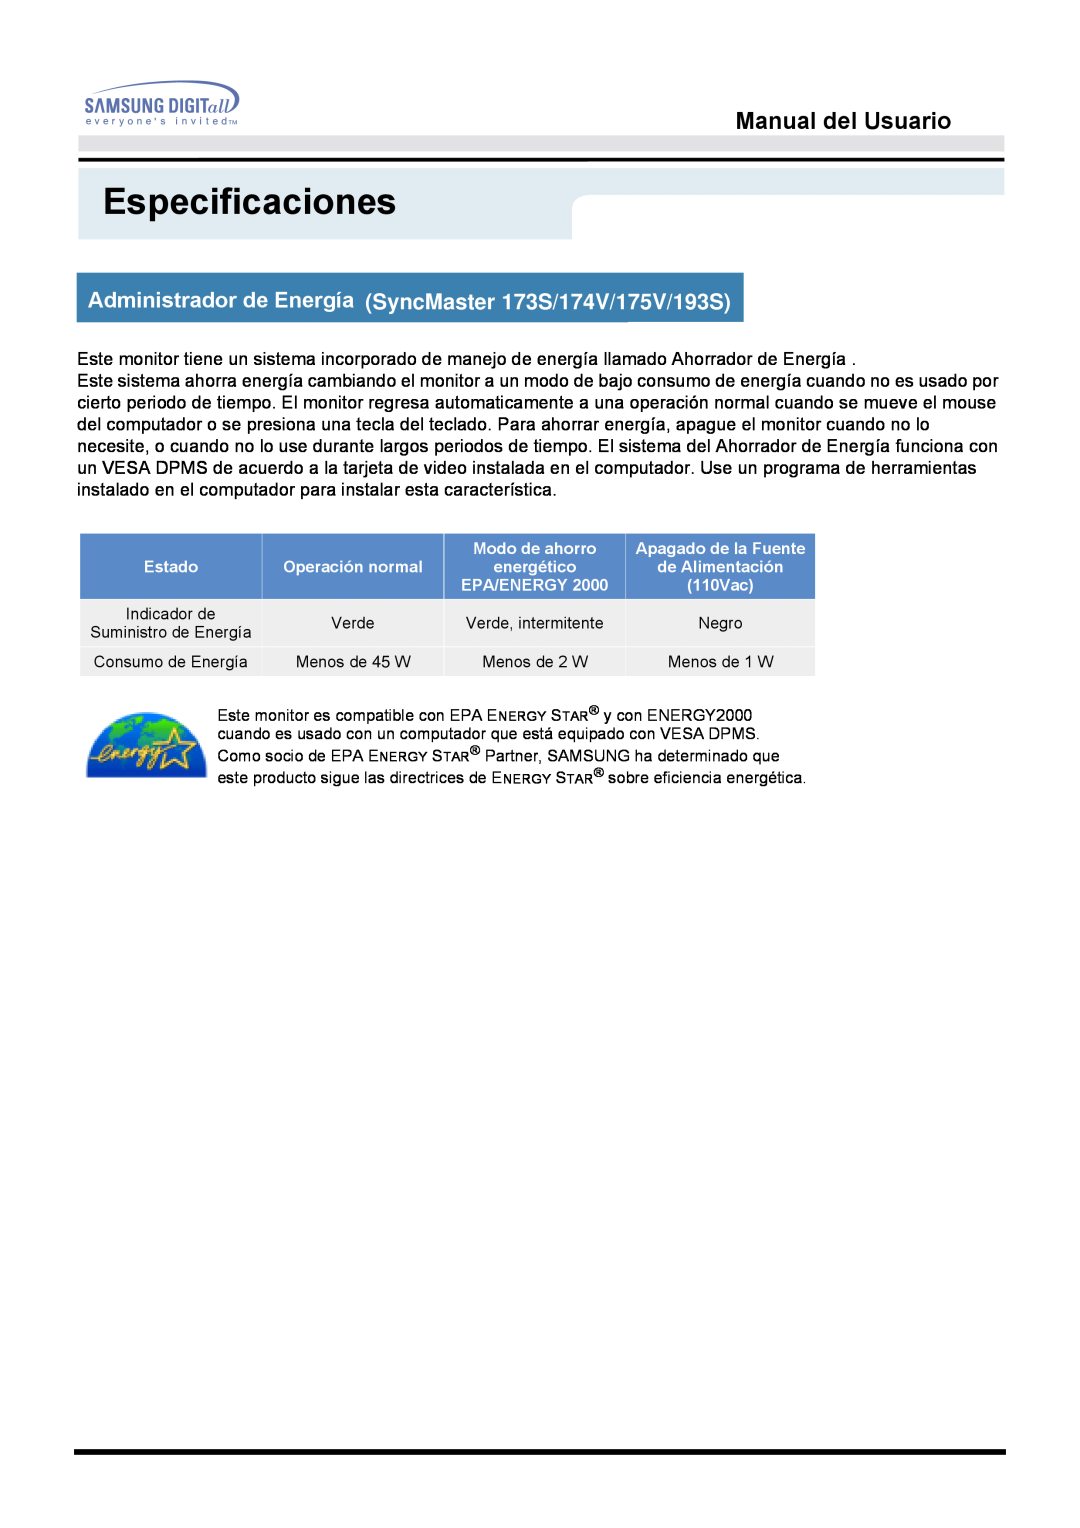 Samsung 153S manual Especificaciones, Manual del Usuario, Indicador de 